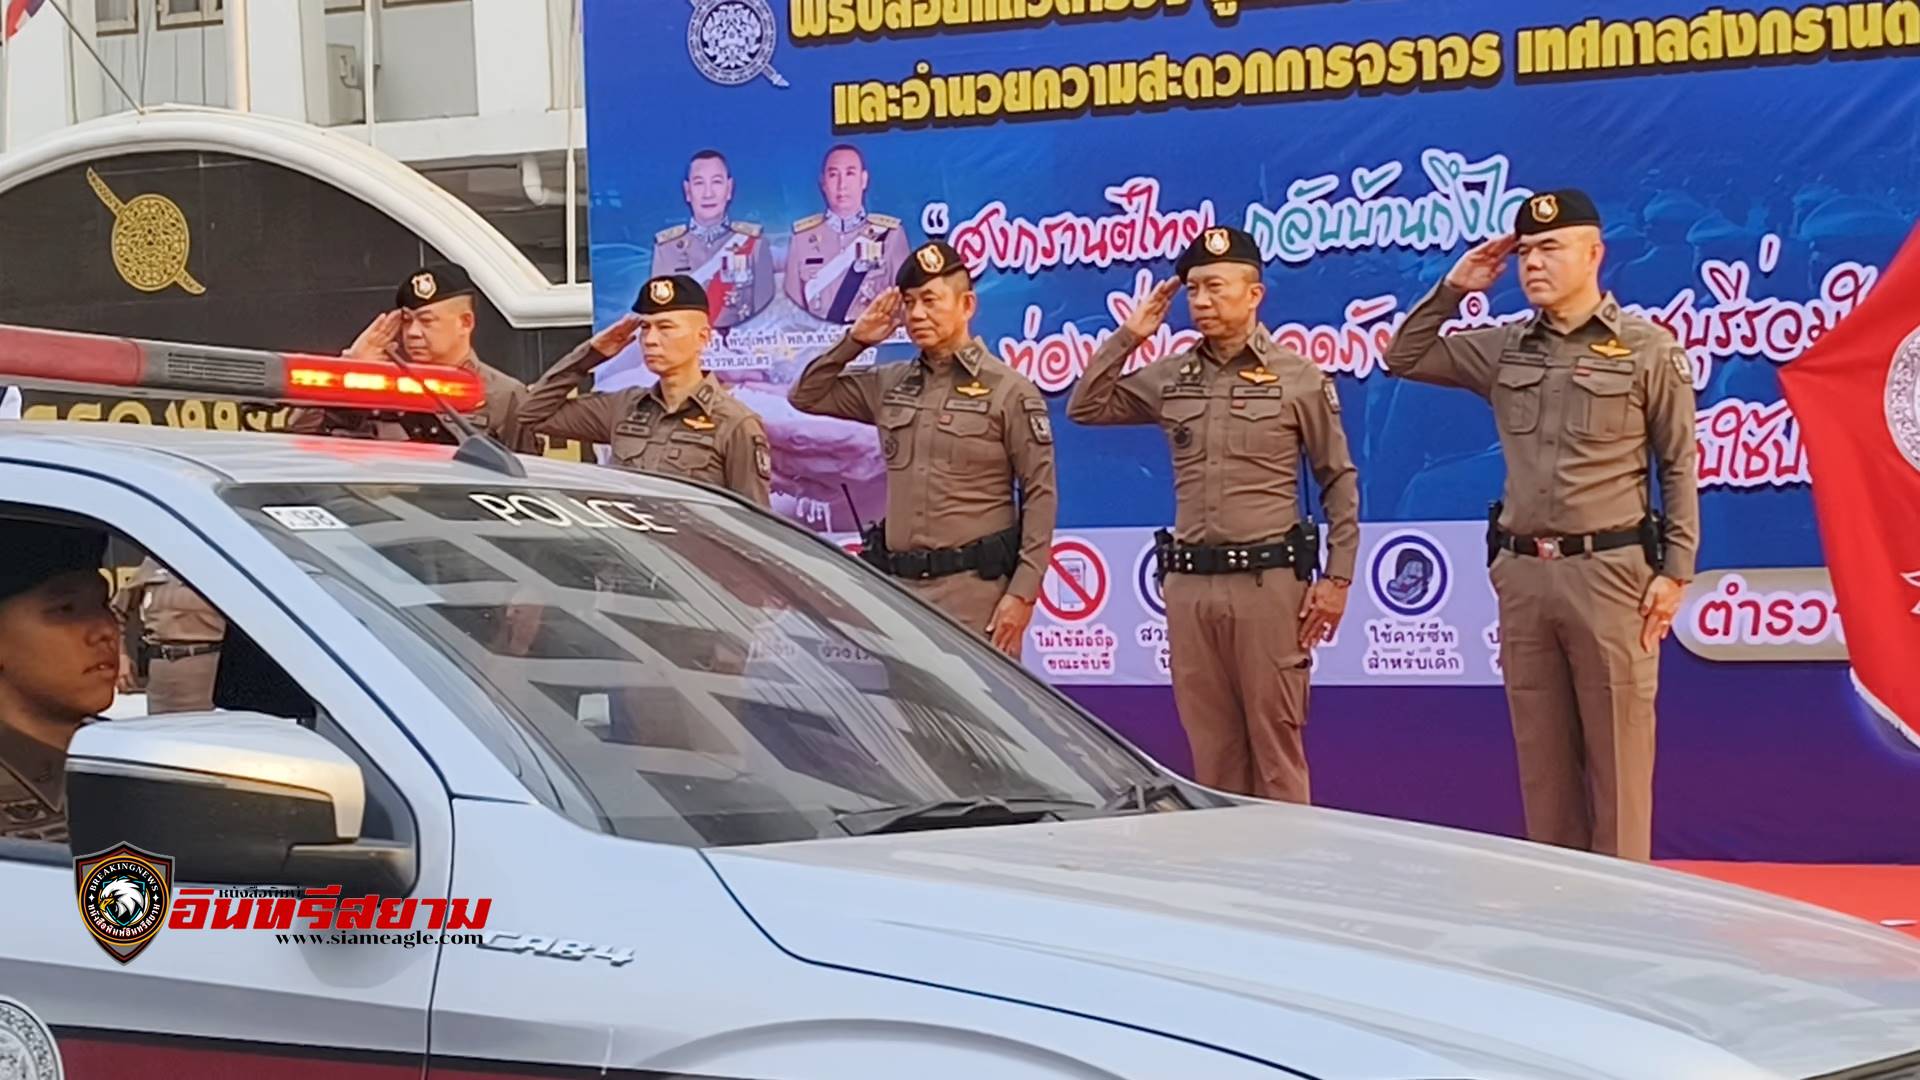 ราชบุรี-ตำรวจภูธรฯปล่อยแถวดูแลความปลอดภัยรักษาความสงบ ช่วงสงกรานต์